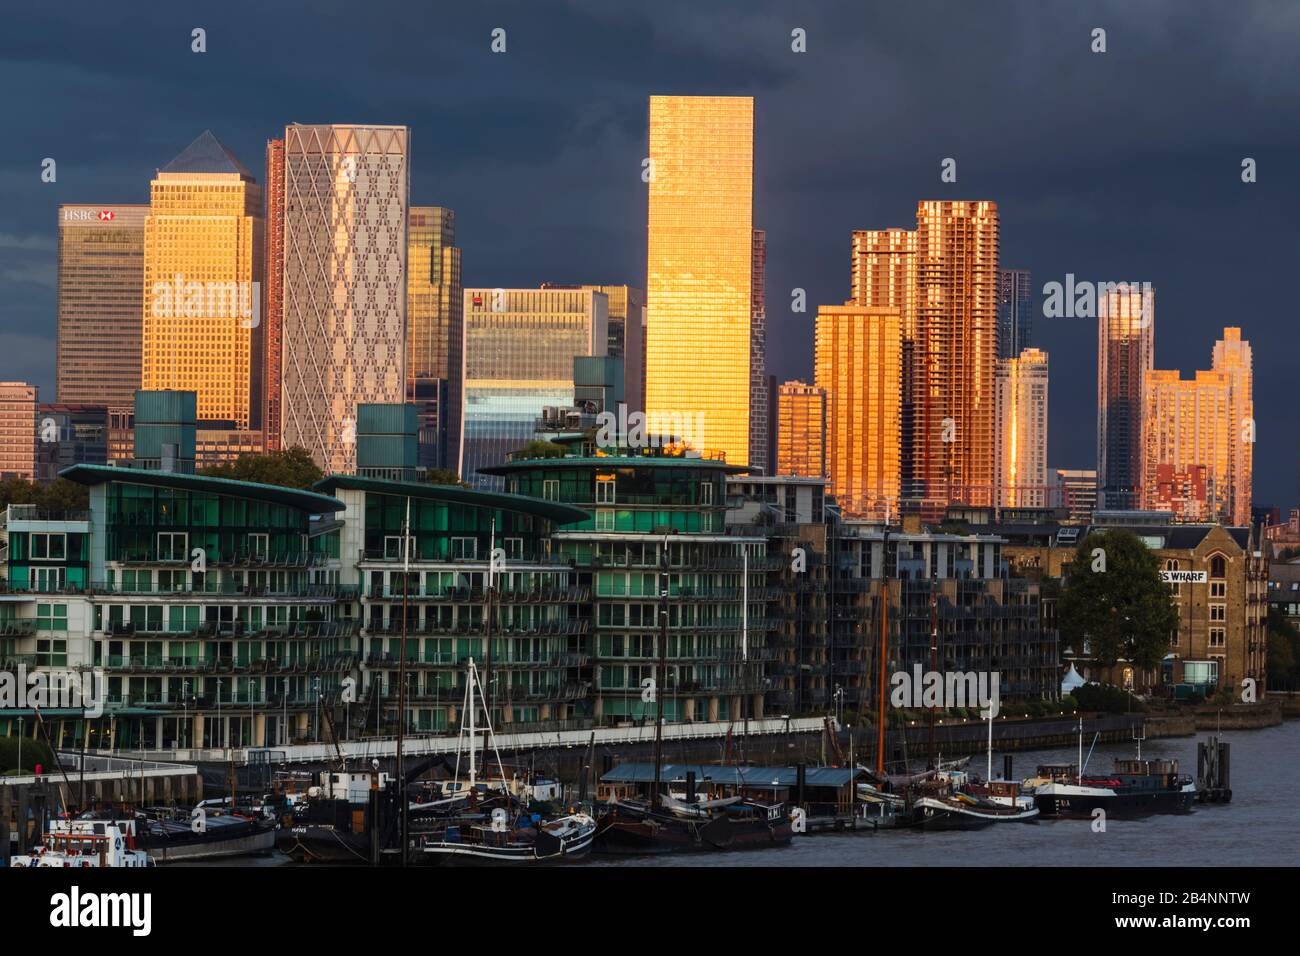 England, London, Docklands, am späten Abend Licht auf Canary Wharf Skyline und die Themse. Stockfoto